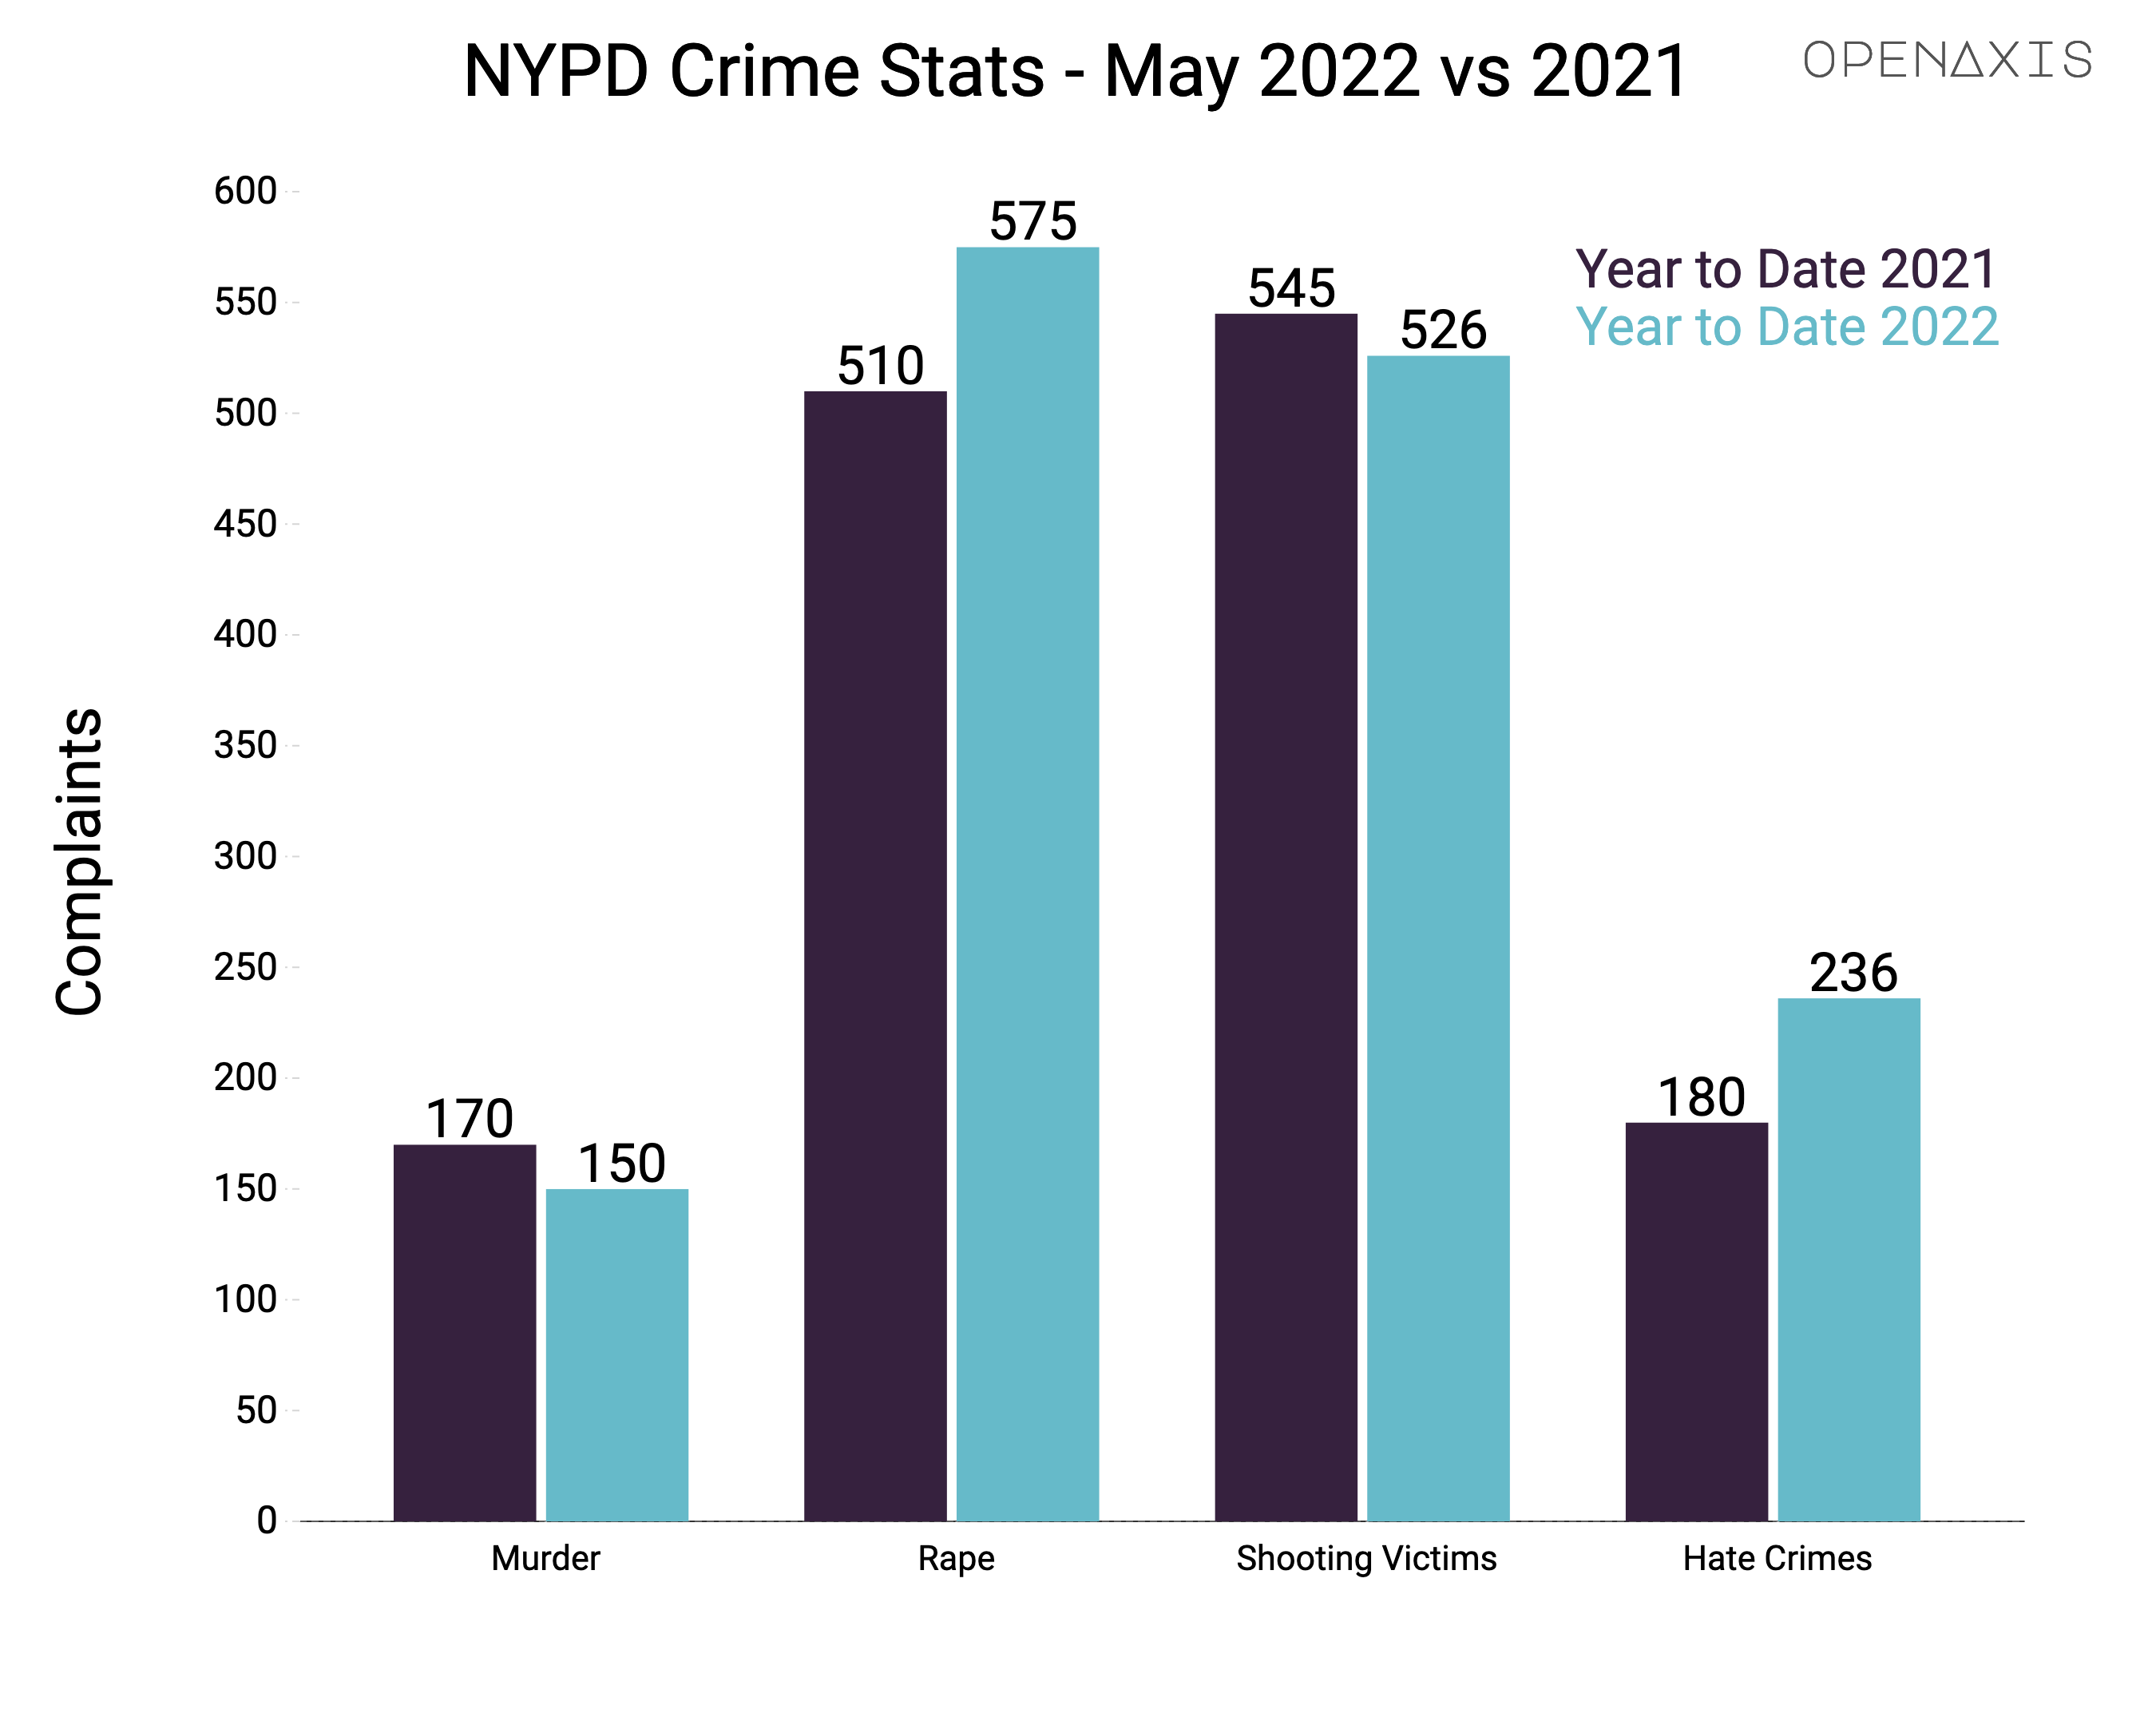 "NYPD Crime Stats - May 2022 vs 2021"